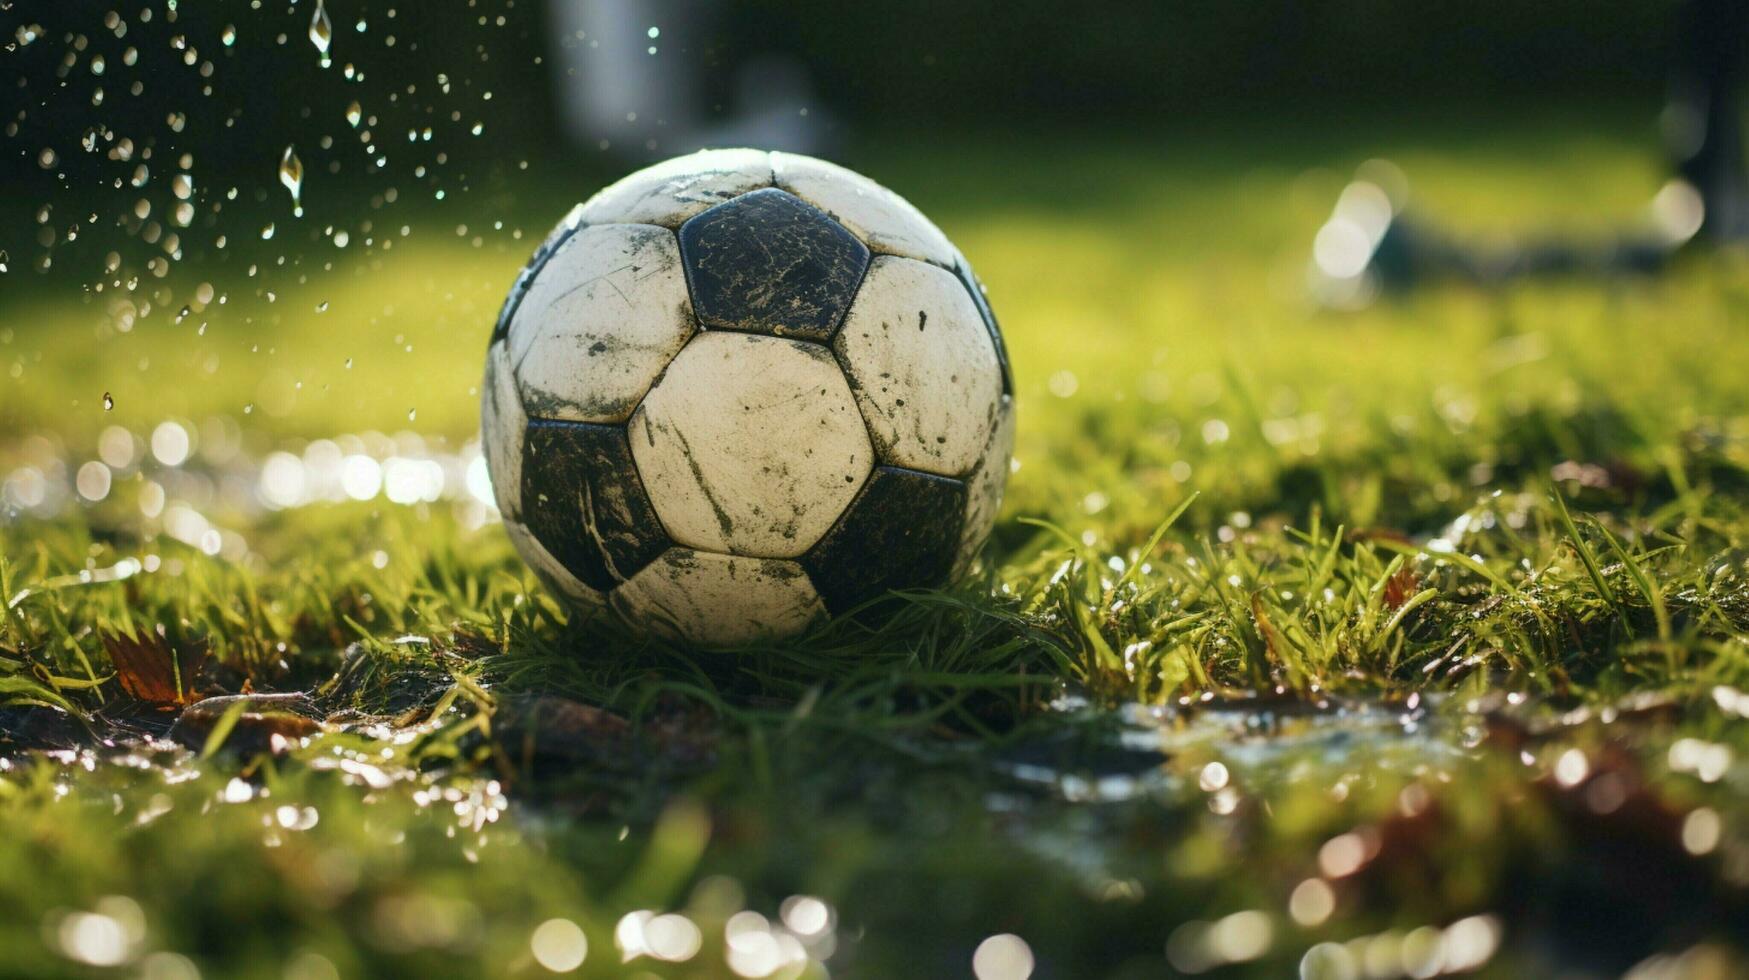 dirty soccer ball on wet grass field photo